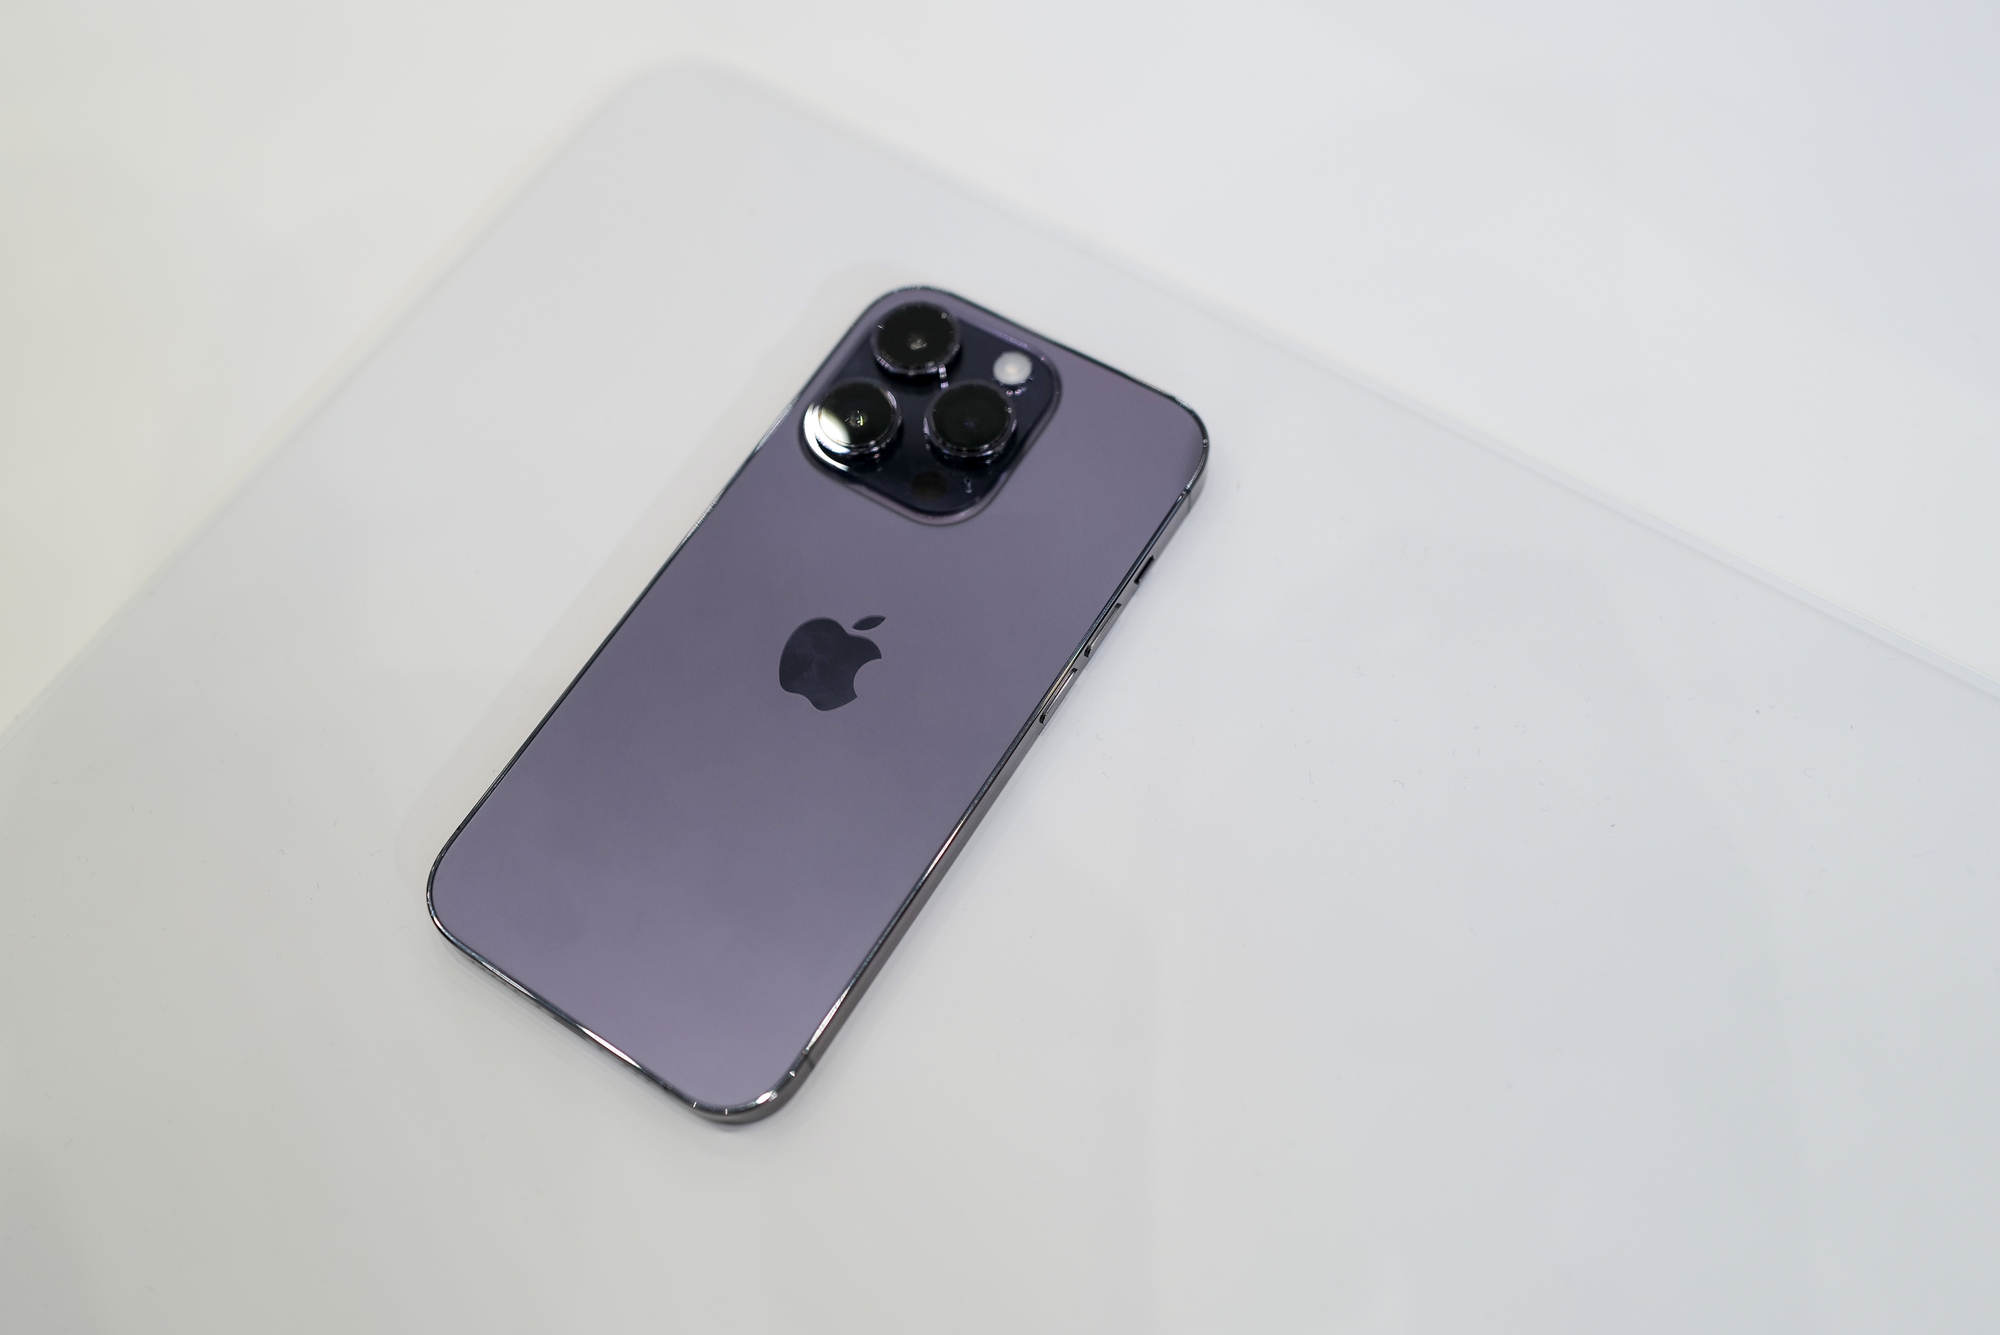 iPhone 14 Pro, màu tím, đời thực: Bạn đang tìm kiếm một chiếc iPhone 14 Pro màu tím thật đẹp để trải nghiệm chất lượng thực tế? Với thiết kế tối giản và đầy năng lượng, chiếc điện thoại này sẽ khiến bạn phải trầm trồ ngay từ cái nhìn đầu tiên. Xem ảnh để hiểu hơn về sự hoàn hảo của chiếc điện thoại này.